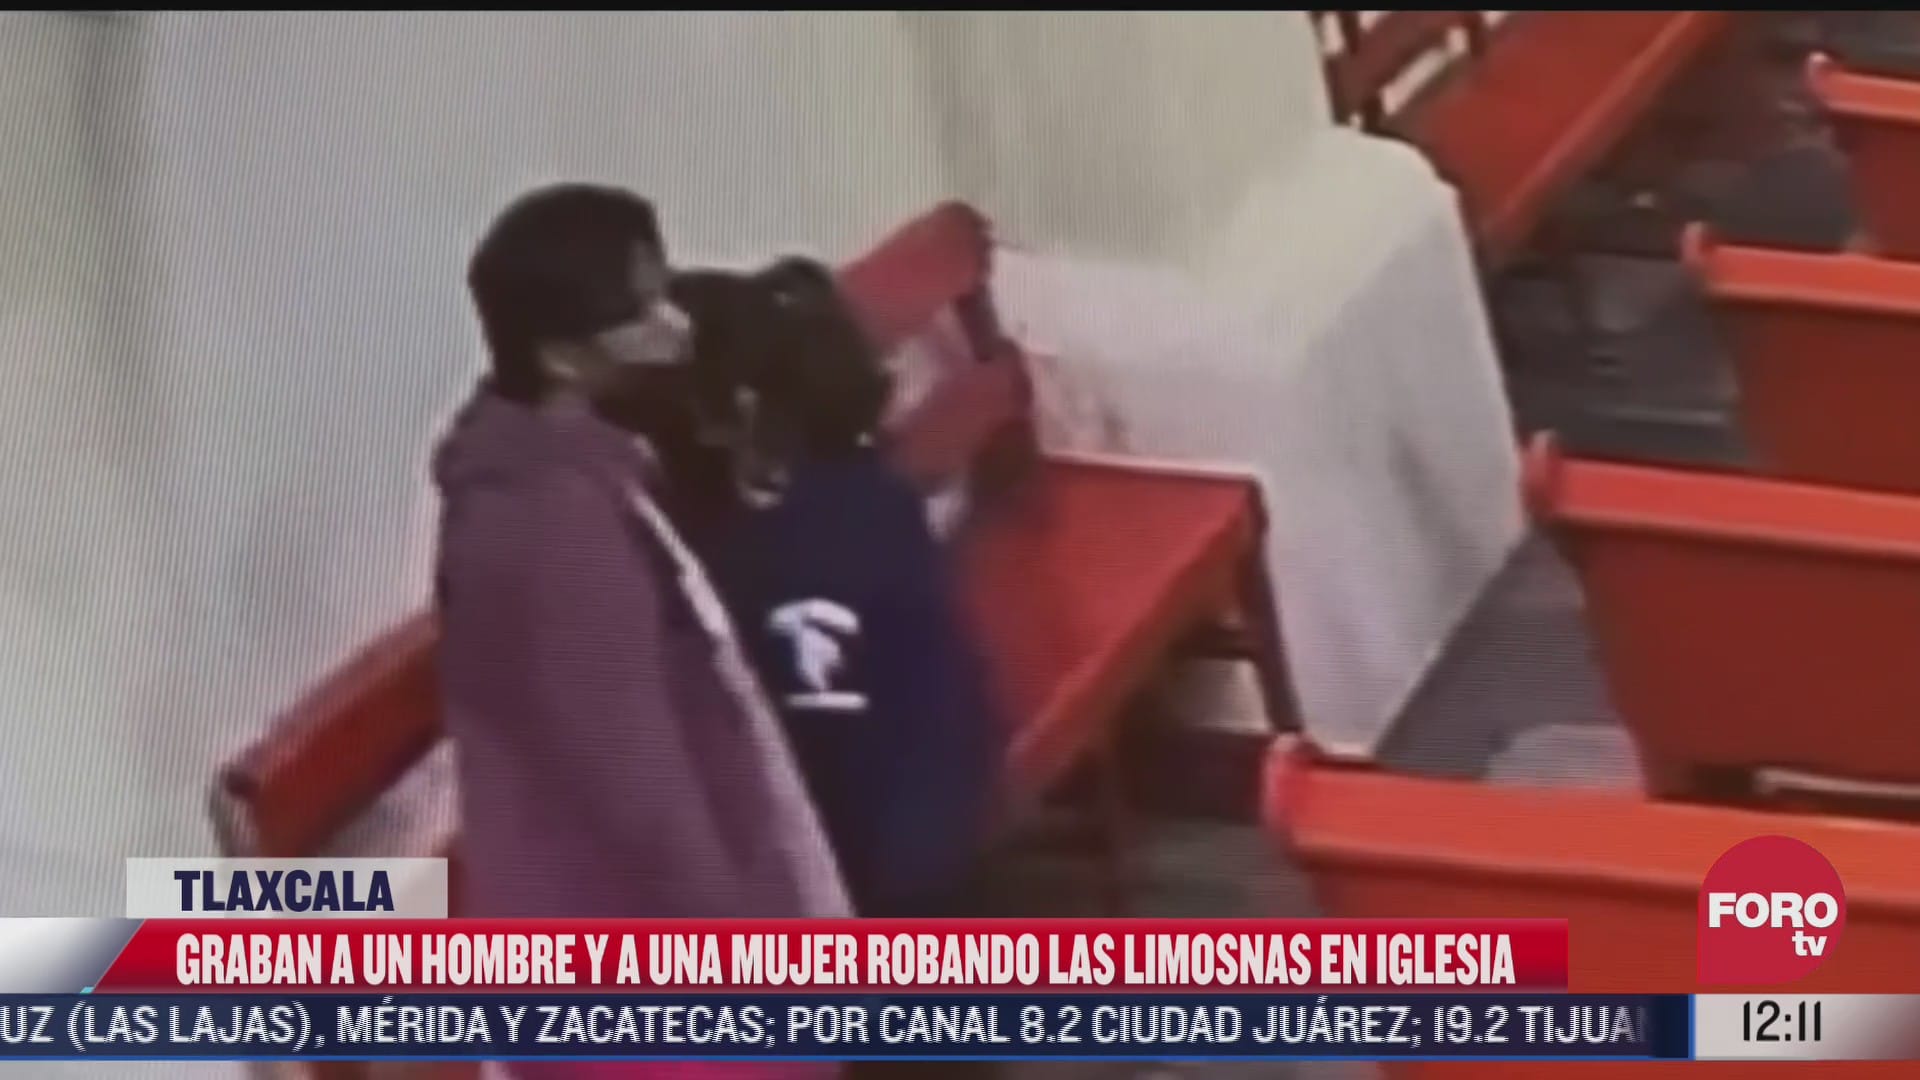 captan a pareja robando limosnas de iglesia en tlaxcala